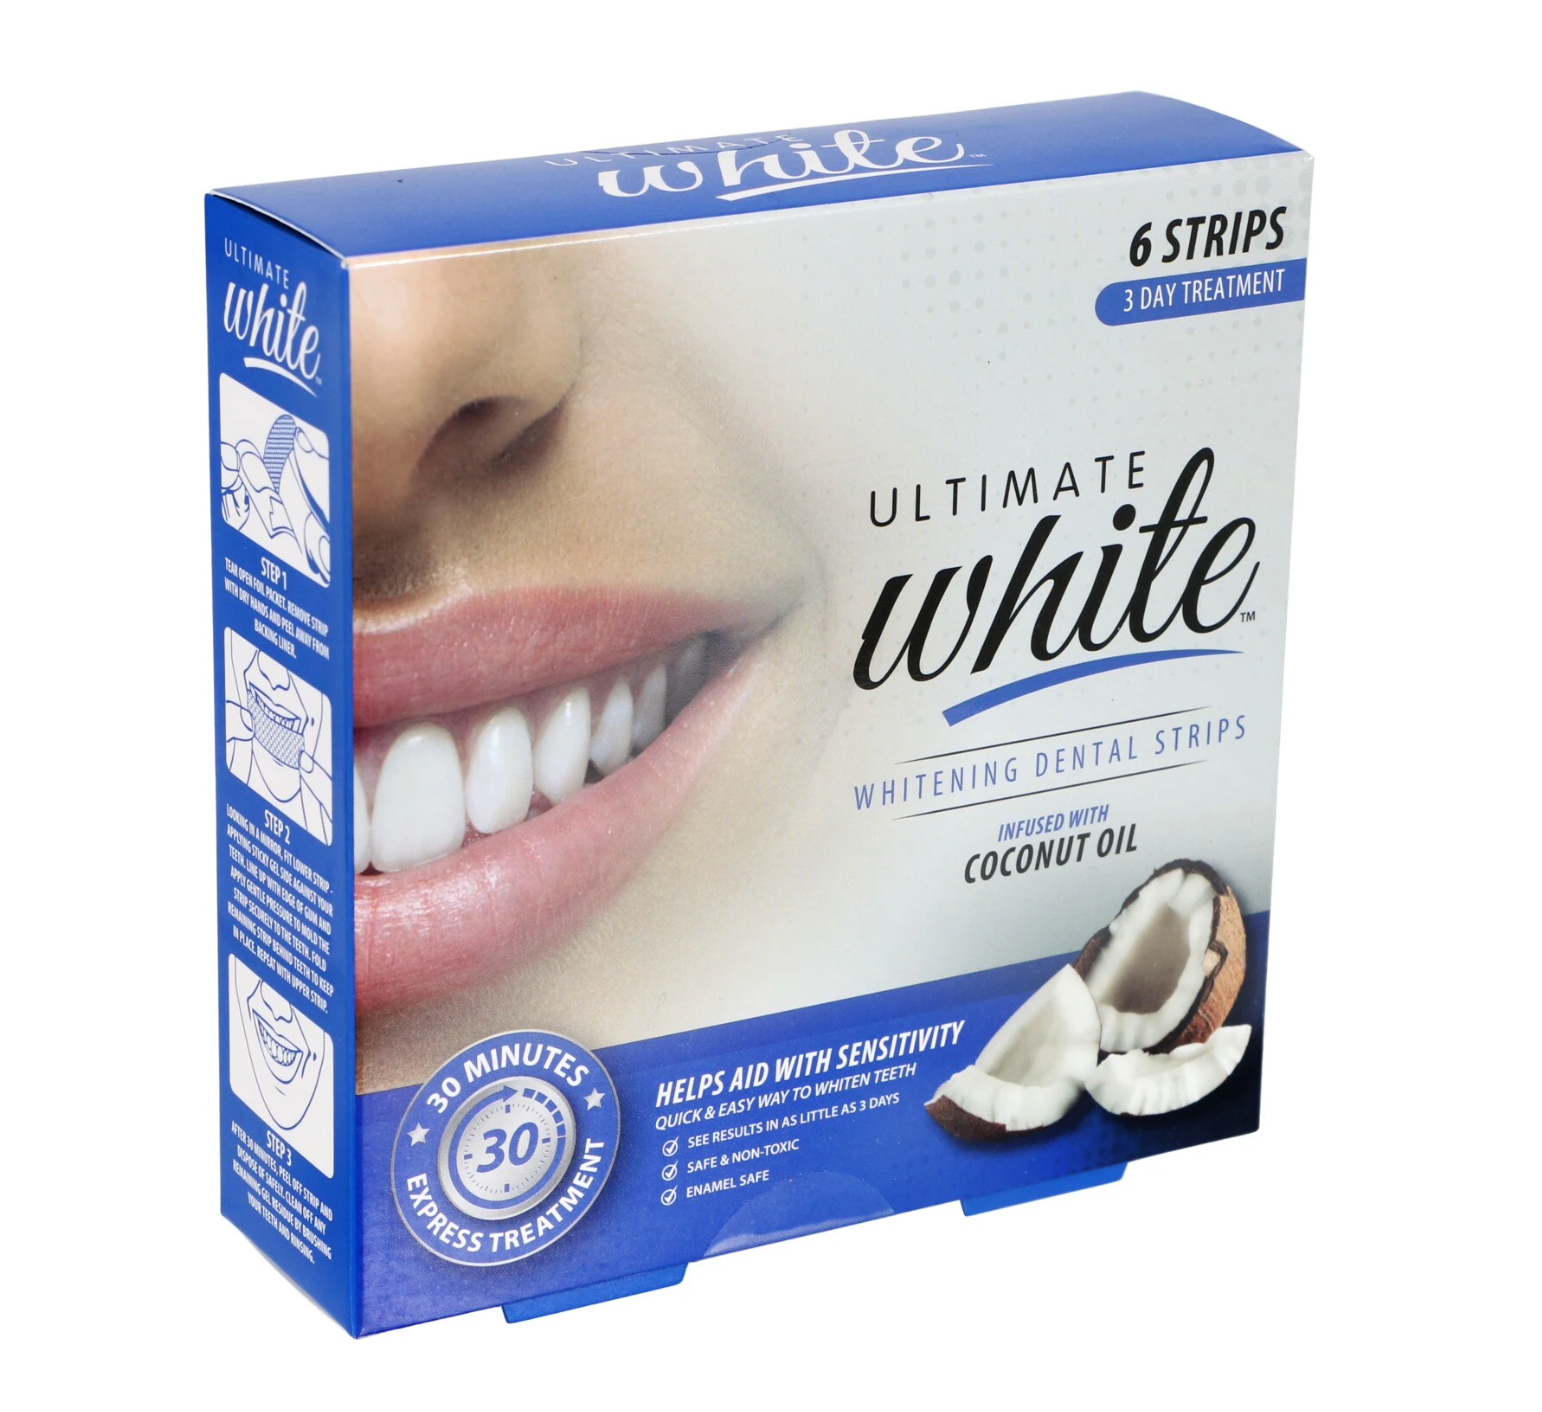 Ultimate White Whitening Dental Strips 6 Strips